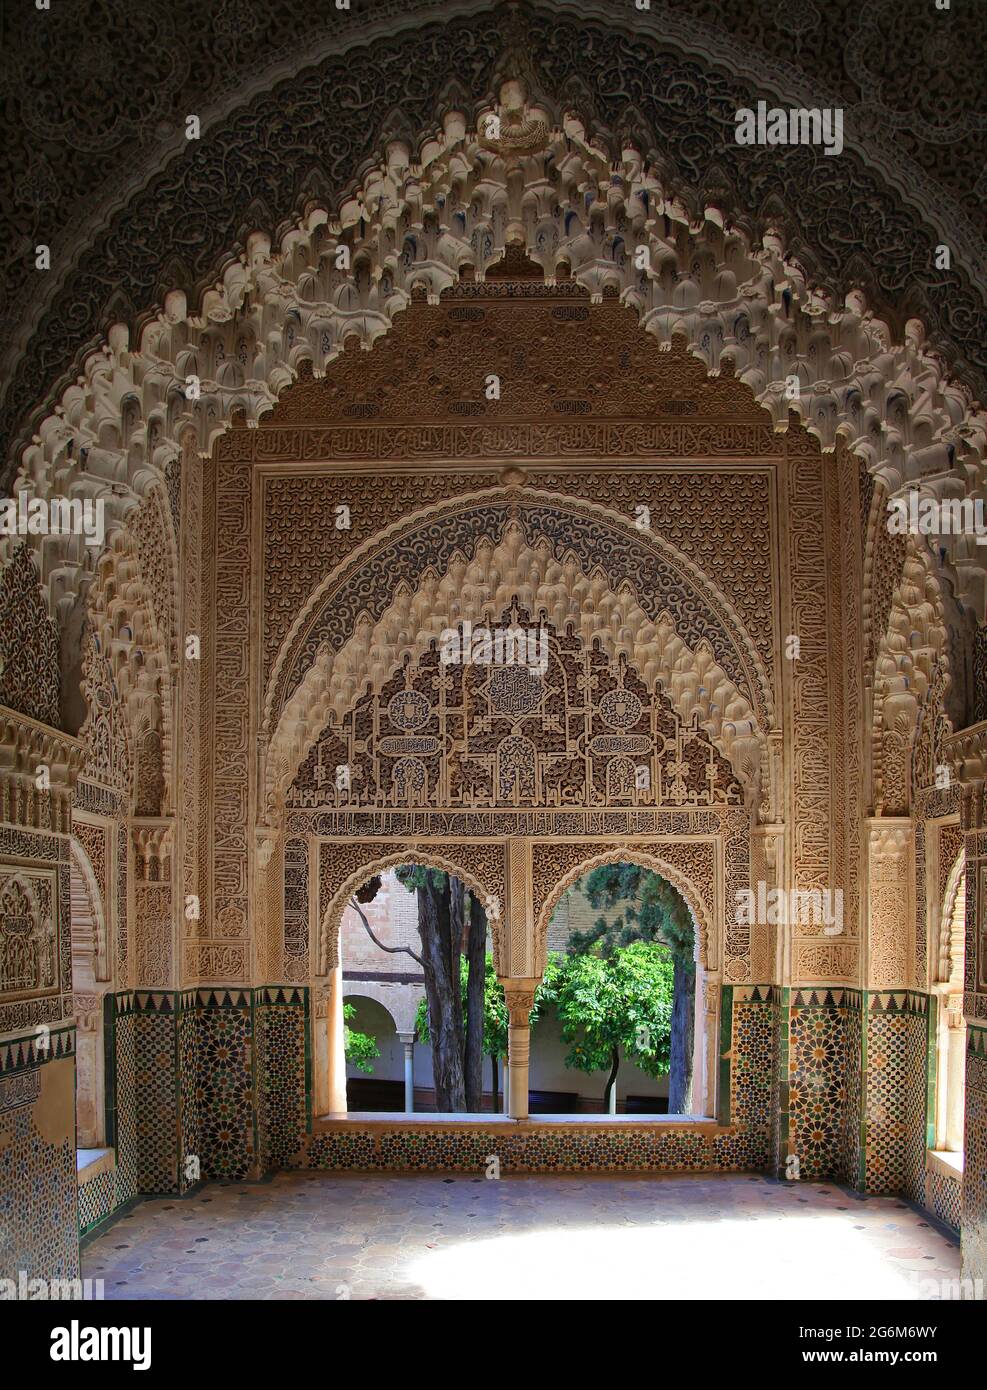 Alhambra Granada Spanien.die Halle der Ajimeces, (Sala de los Ajimeces) zwei Balkone mit zwei Einzelbetten an der Nordwand mit Blick auf den Garten.der Palast der Naziaren / die Palacios Naziaries.Alhambra in Granada Andalusien Spanien Arabesque maurische Architektur Stockfoto